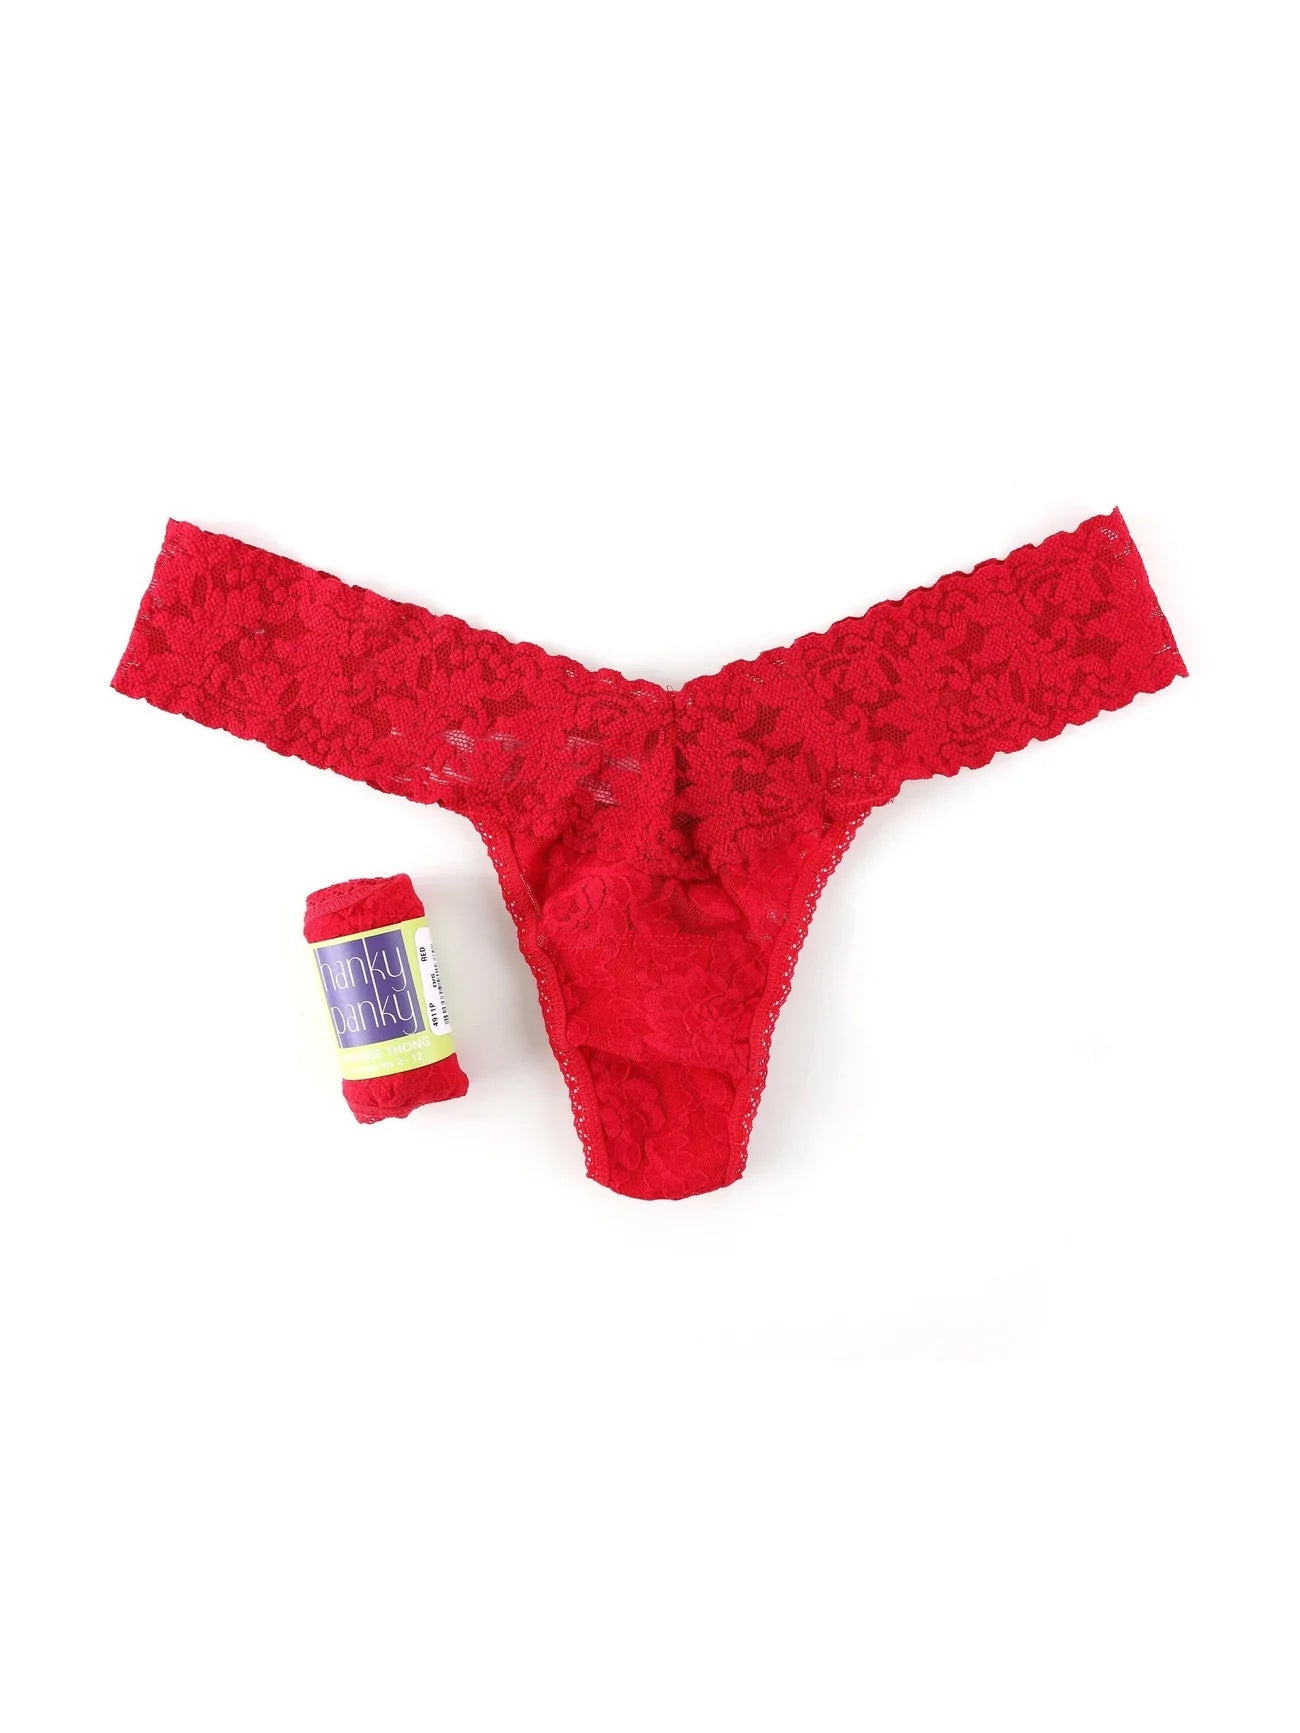 Buy Low Rise Scanty Women's Panties, Lingerie, Underwear